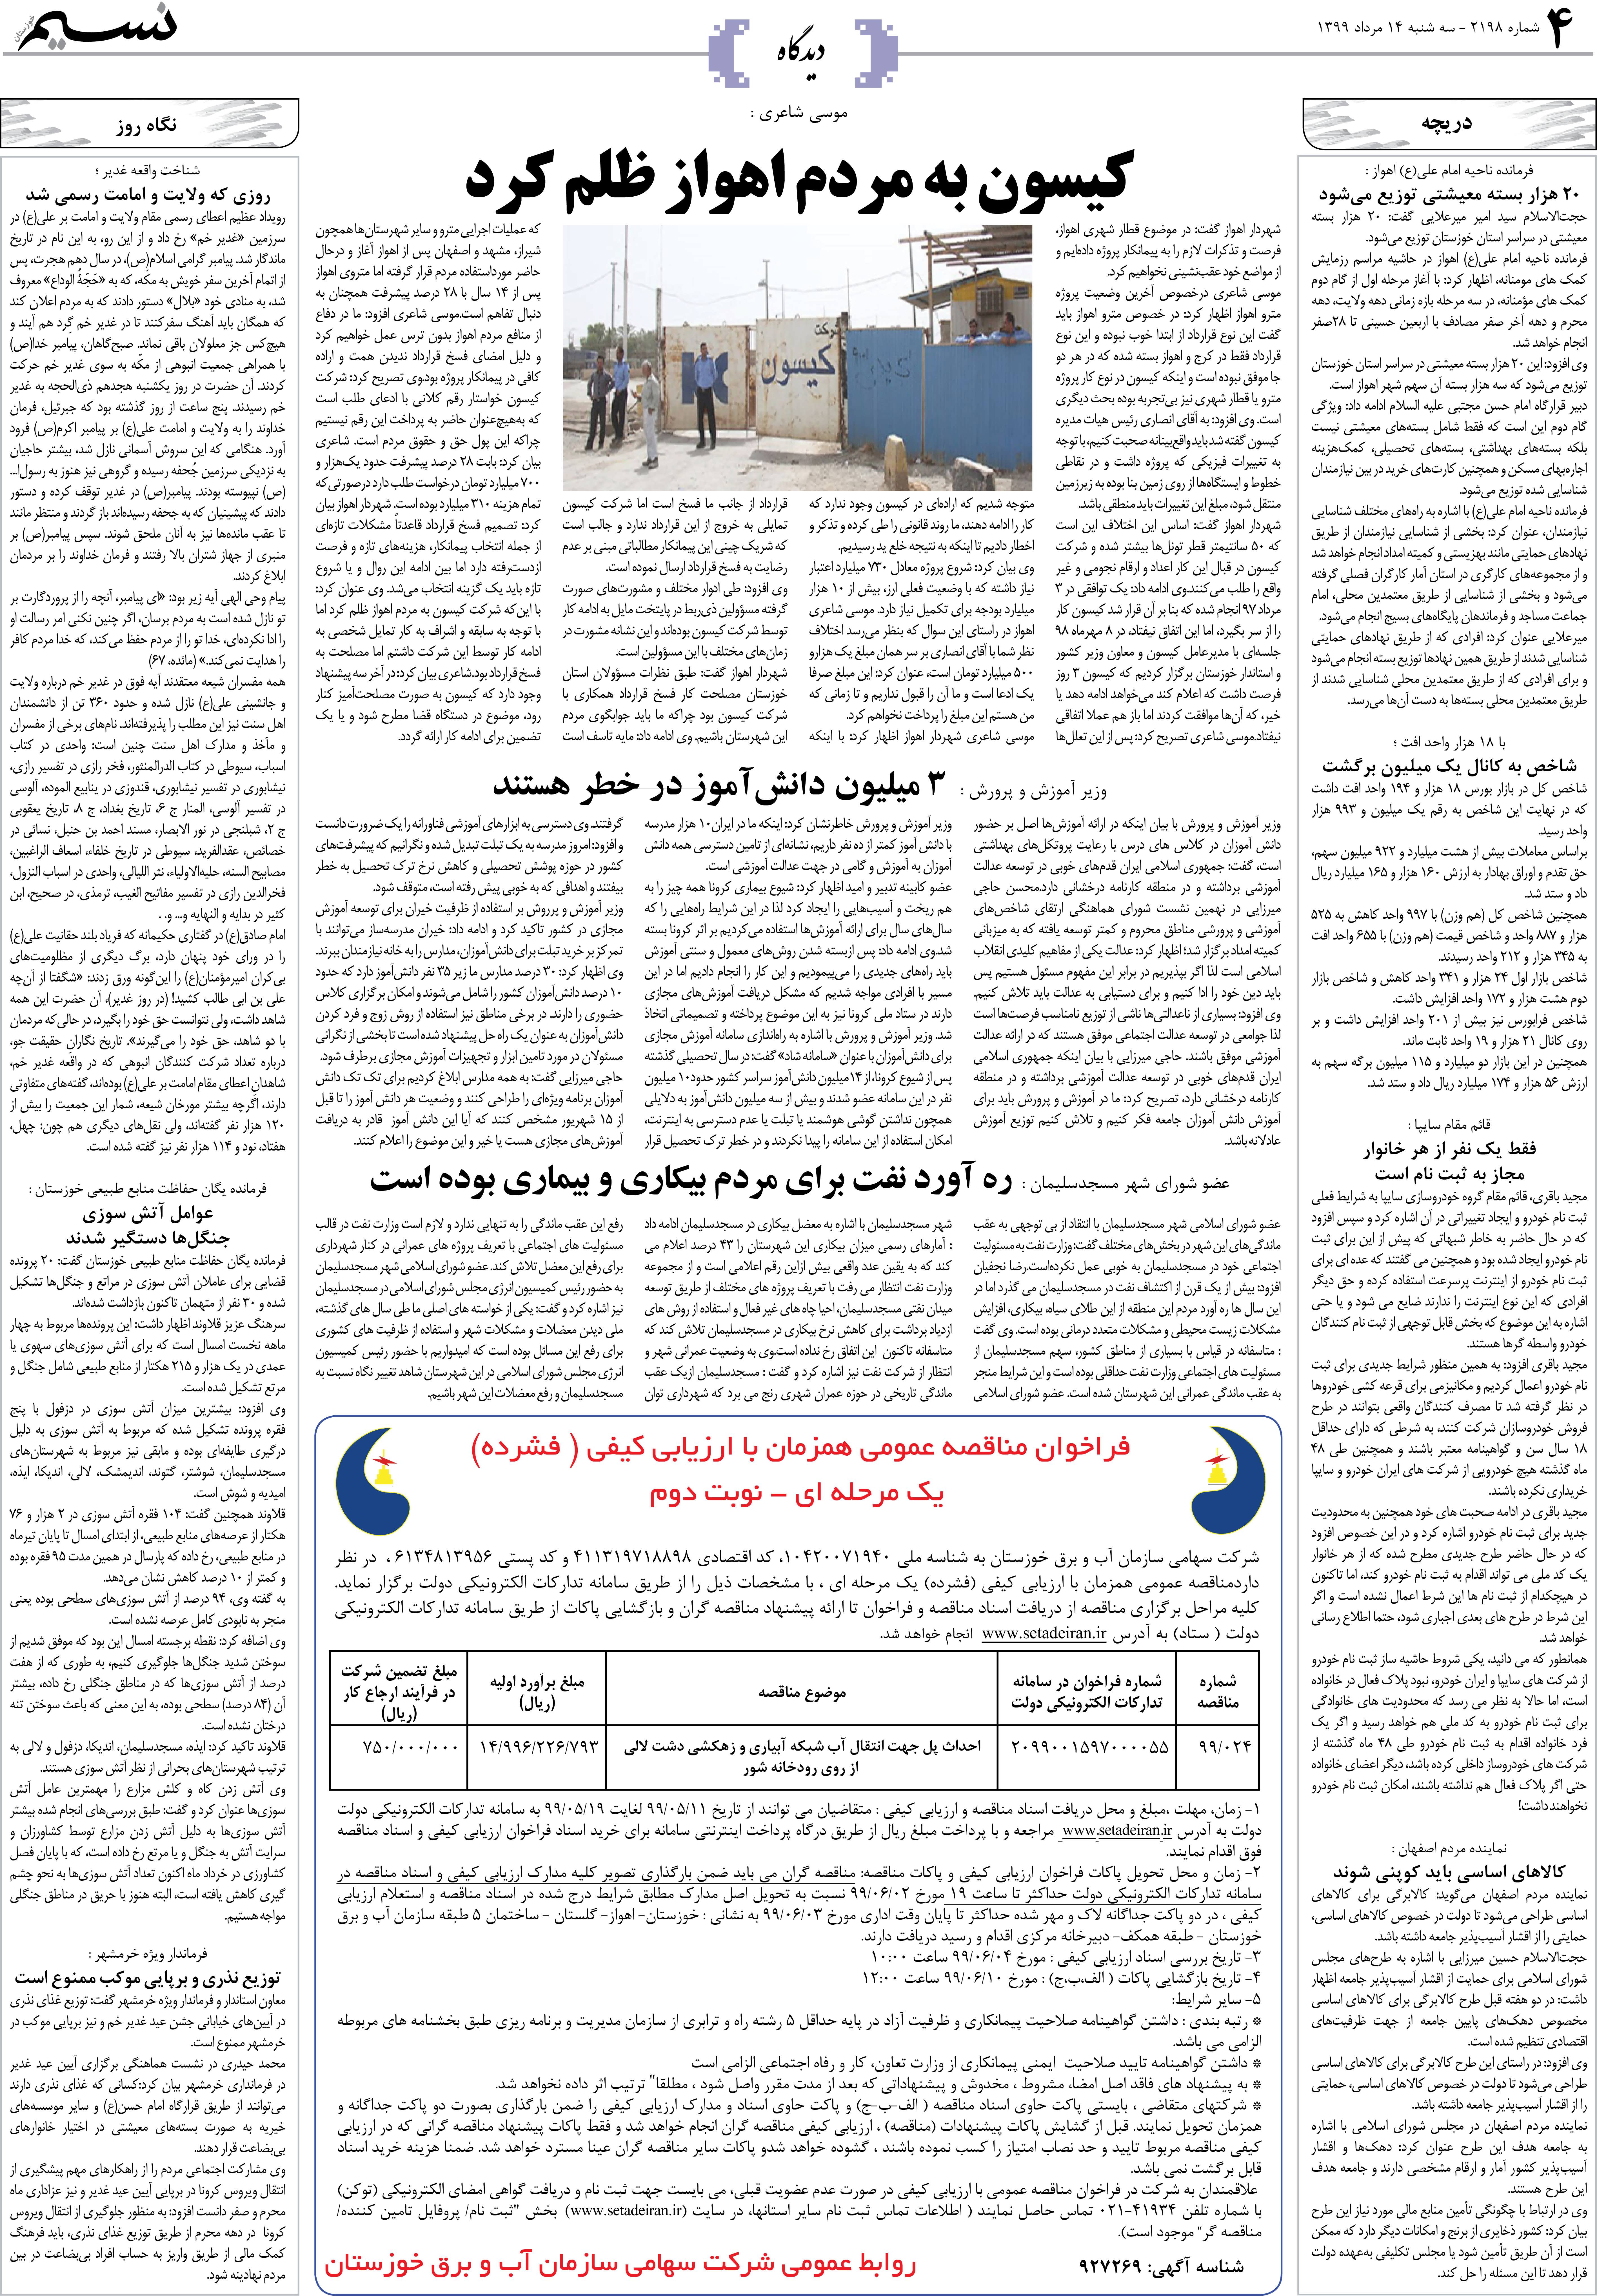 صفحه دیدگاه روزنامه نسیم شماره 2198